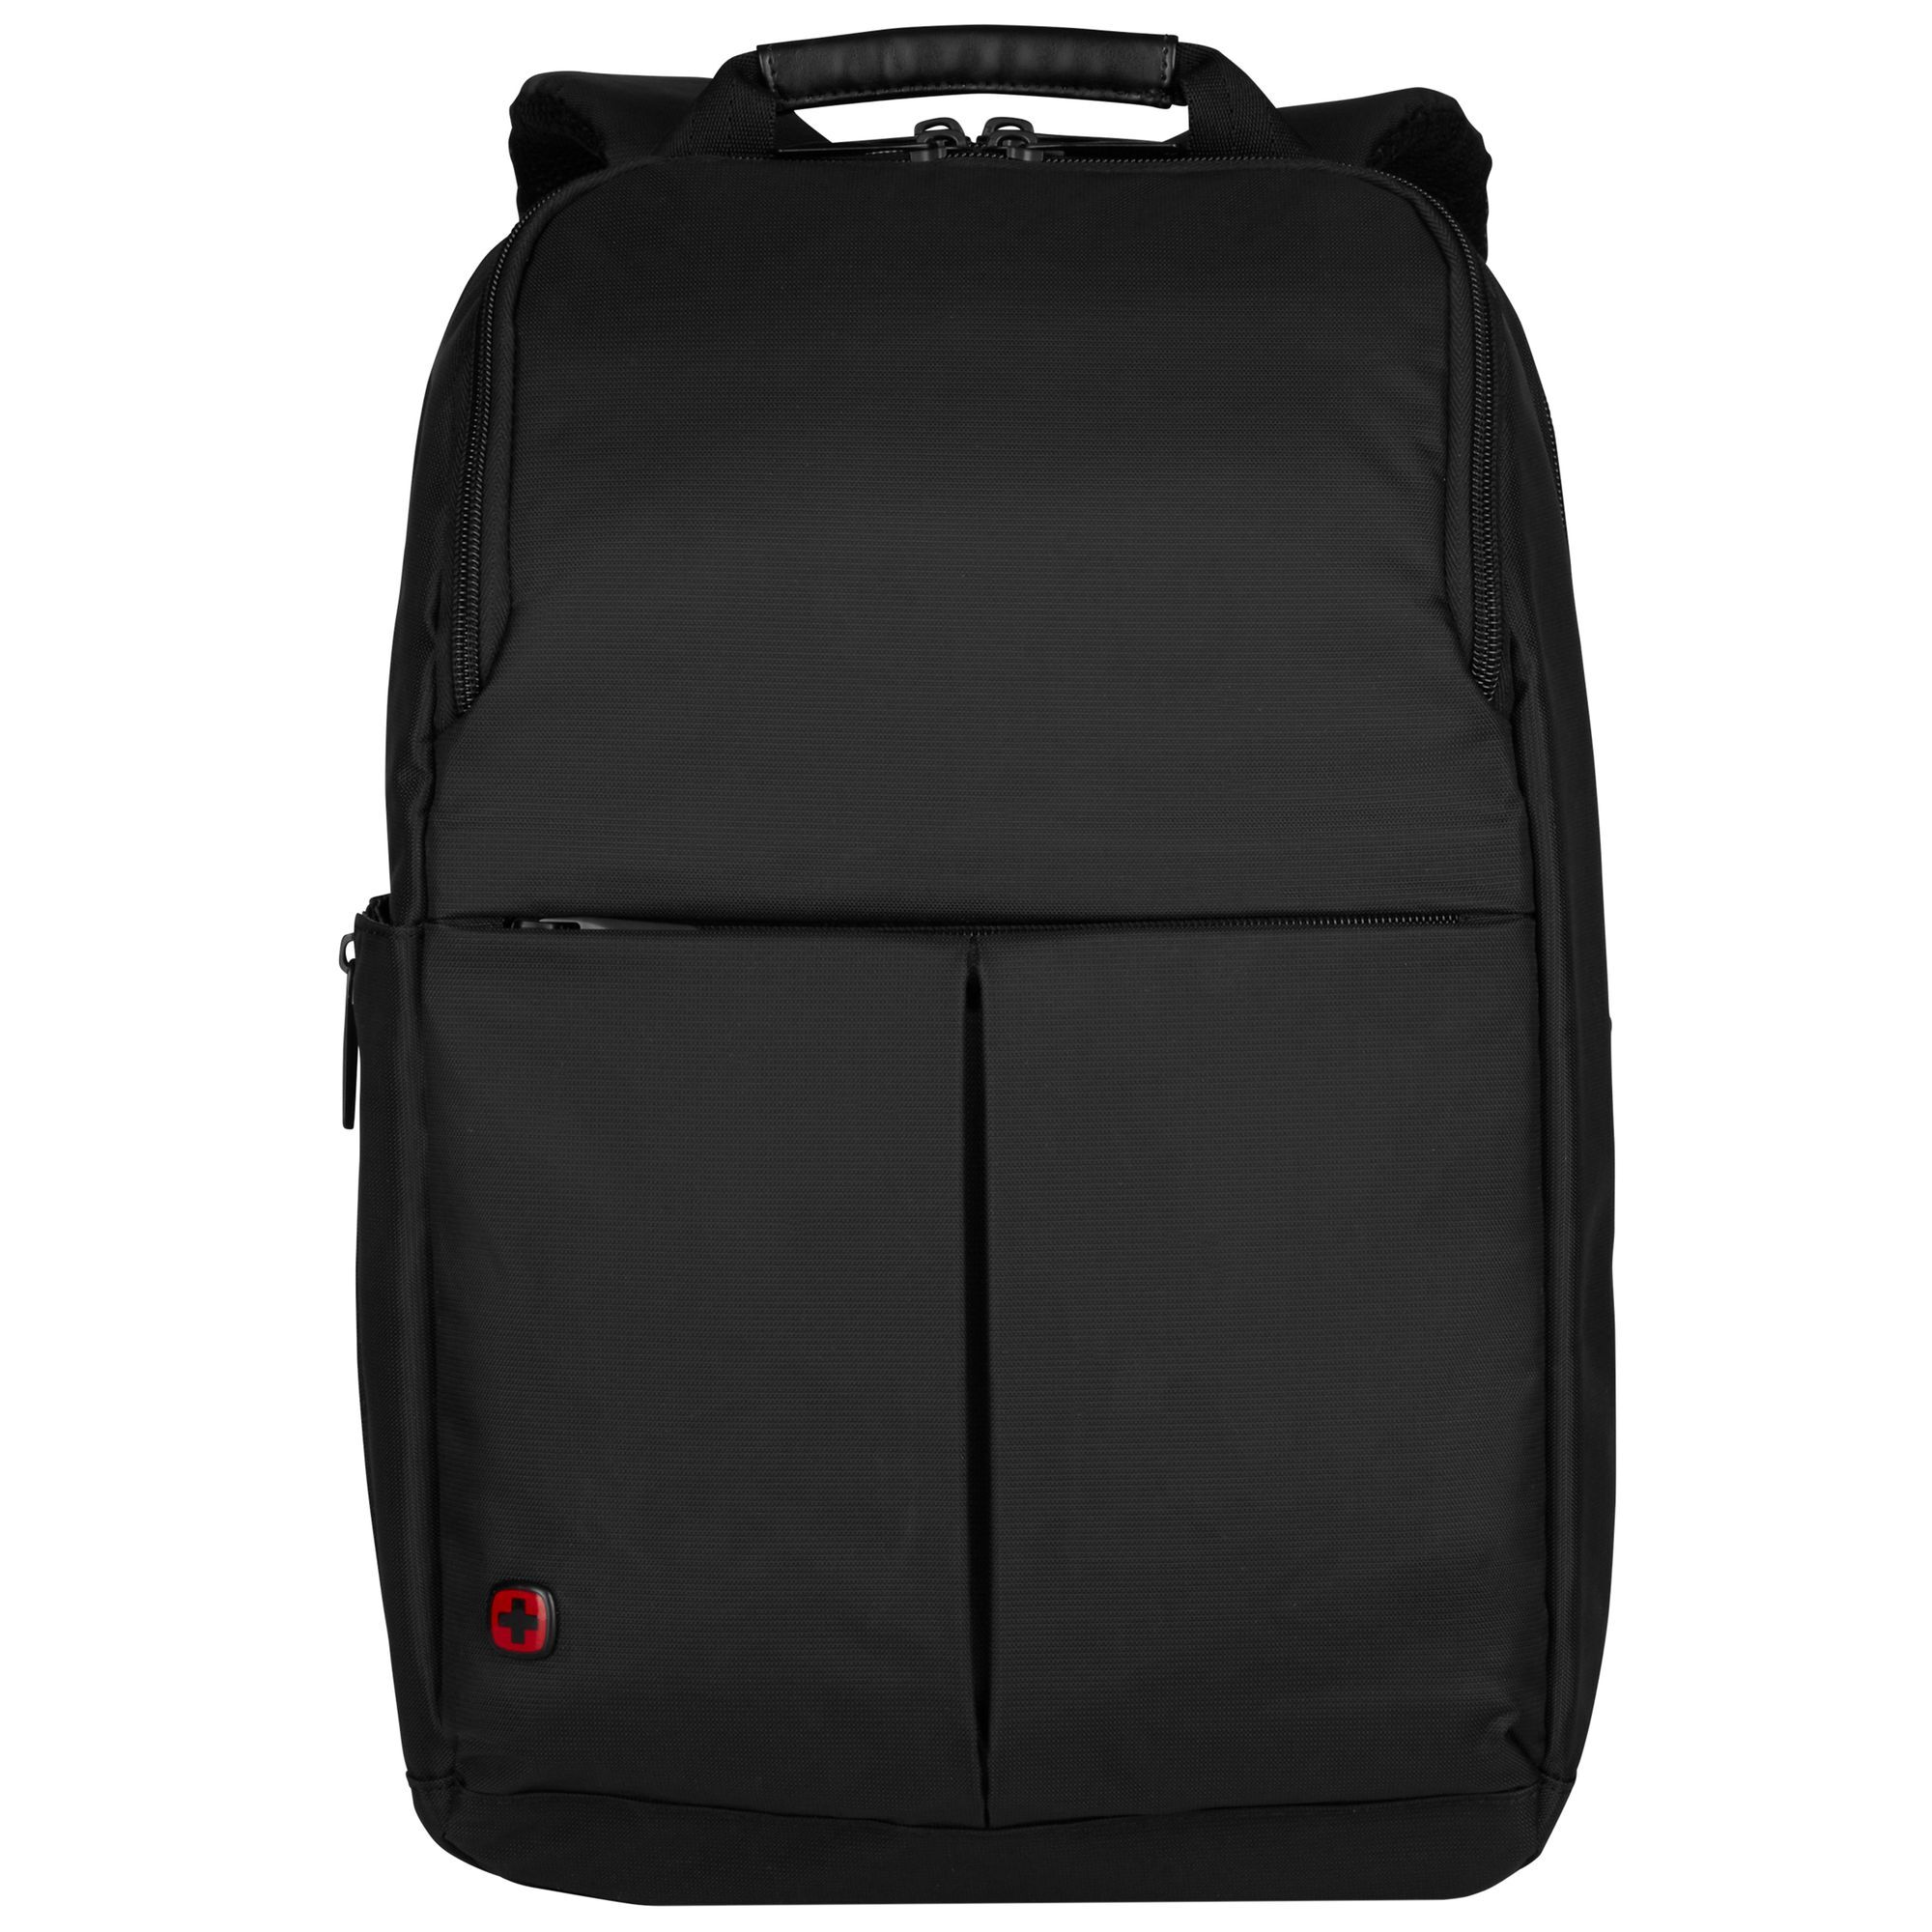 Рюкзак Wenger Reload 14 42 cm Laptopfach, черный сумка для ноутбука wenger reload 16 44 cm черный